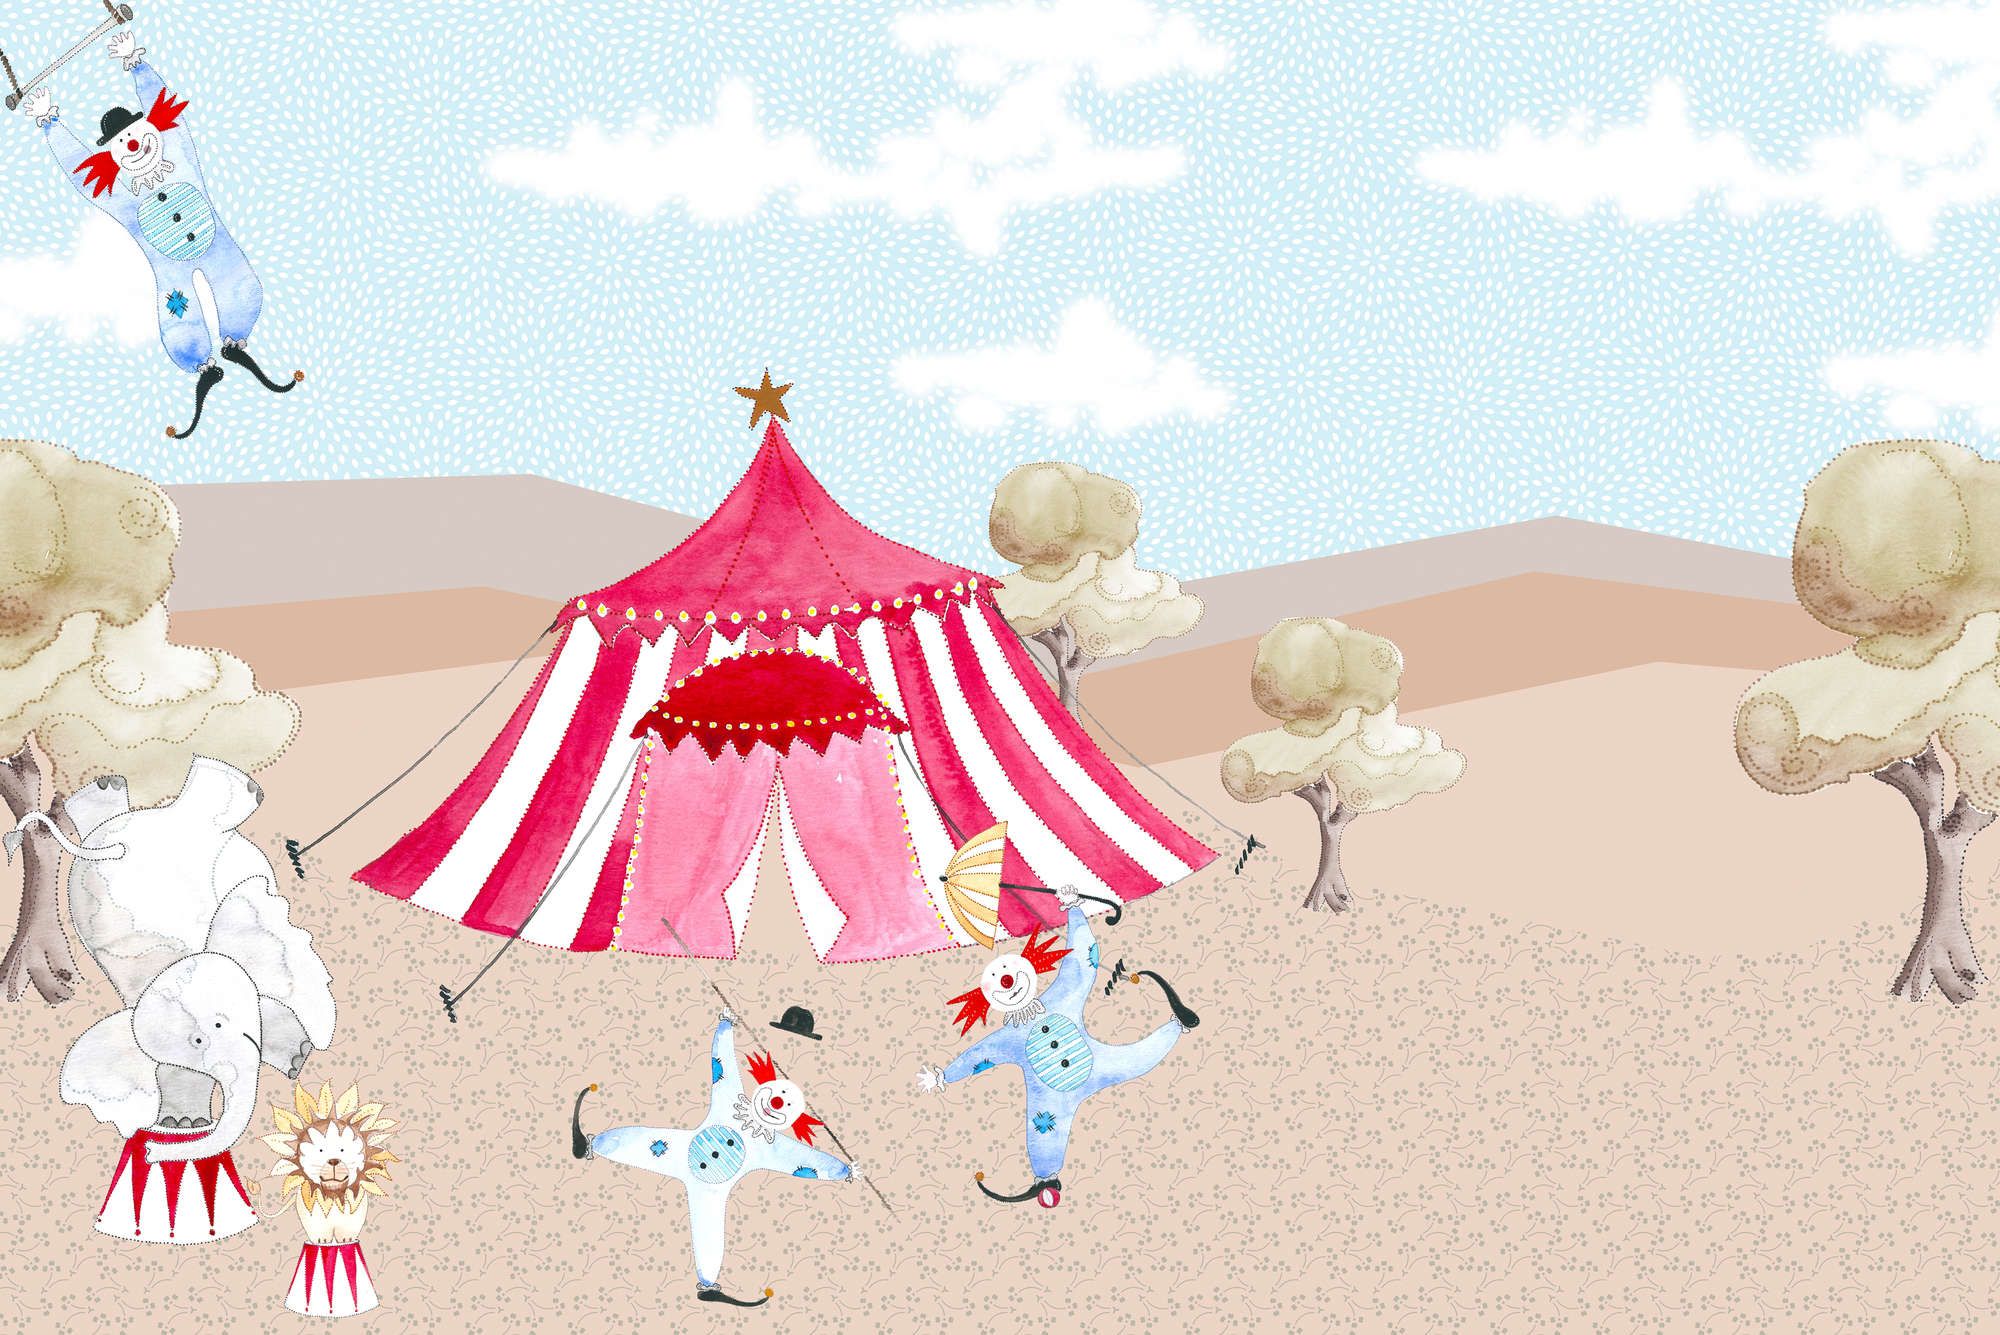             Carta da parati per bambini che disegna la tenda del circo con gli artisti su tessuto non tessuto liscio opaco
        